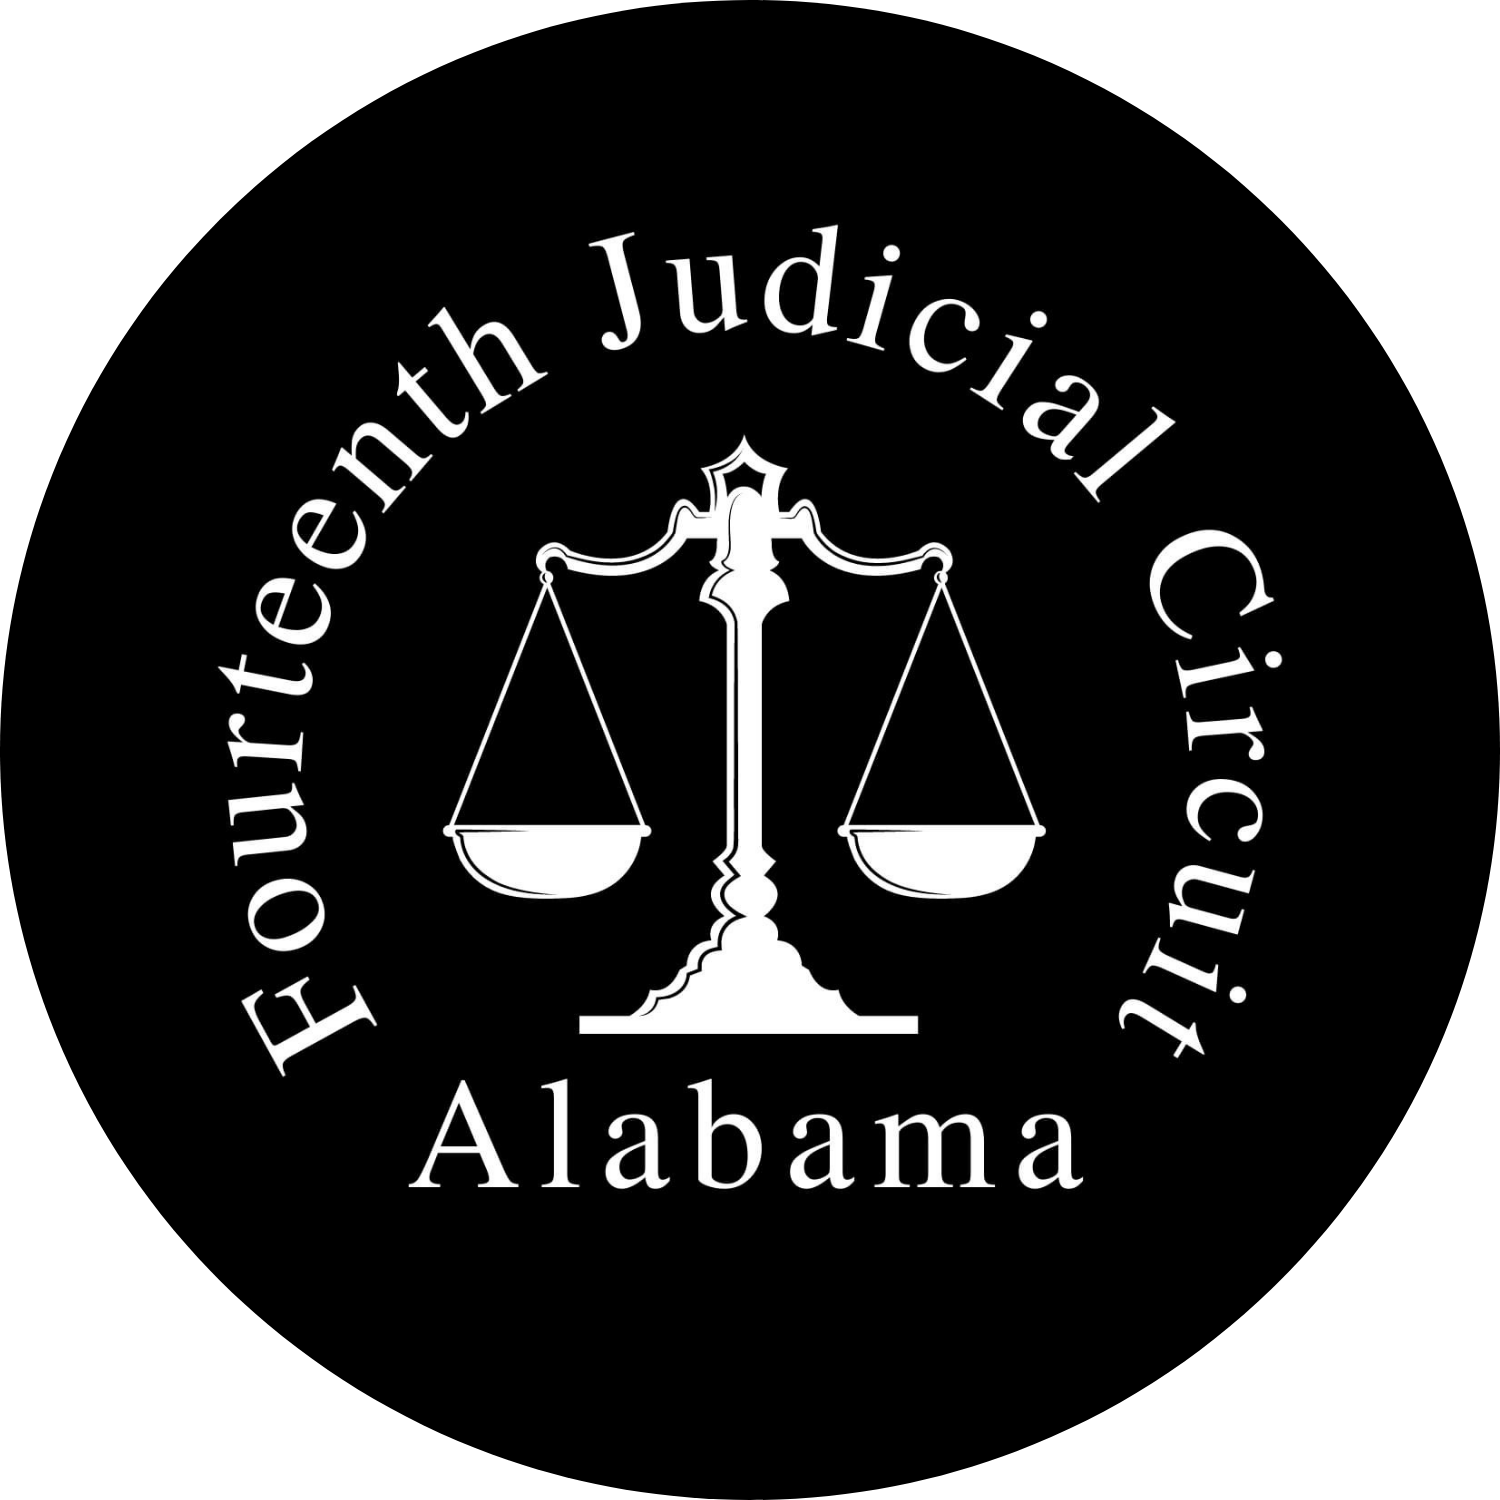 14th Judicial Circuit Court of Alabama